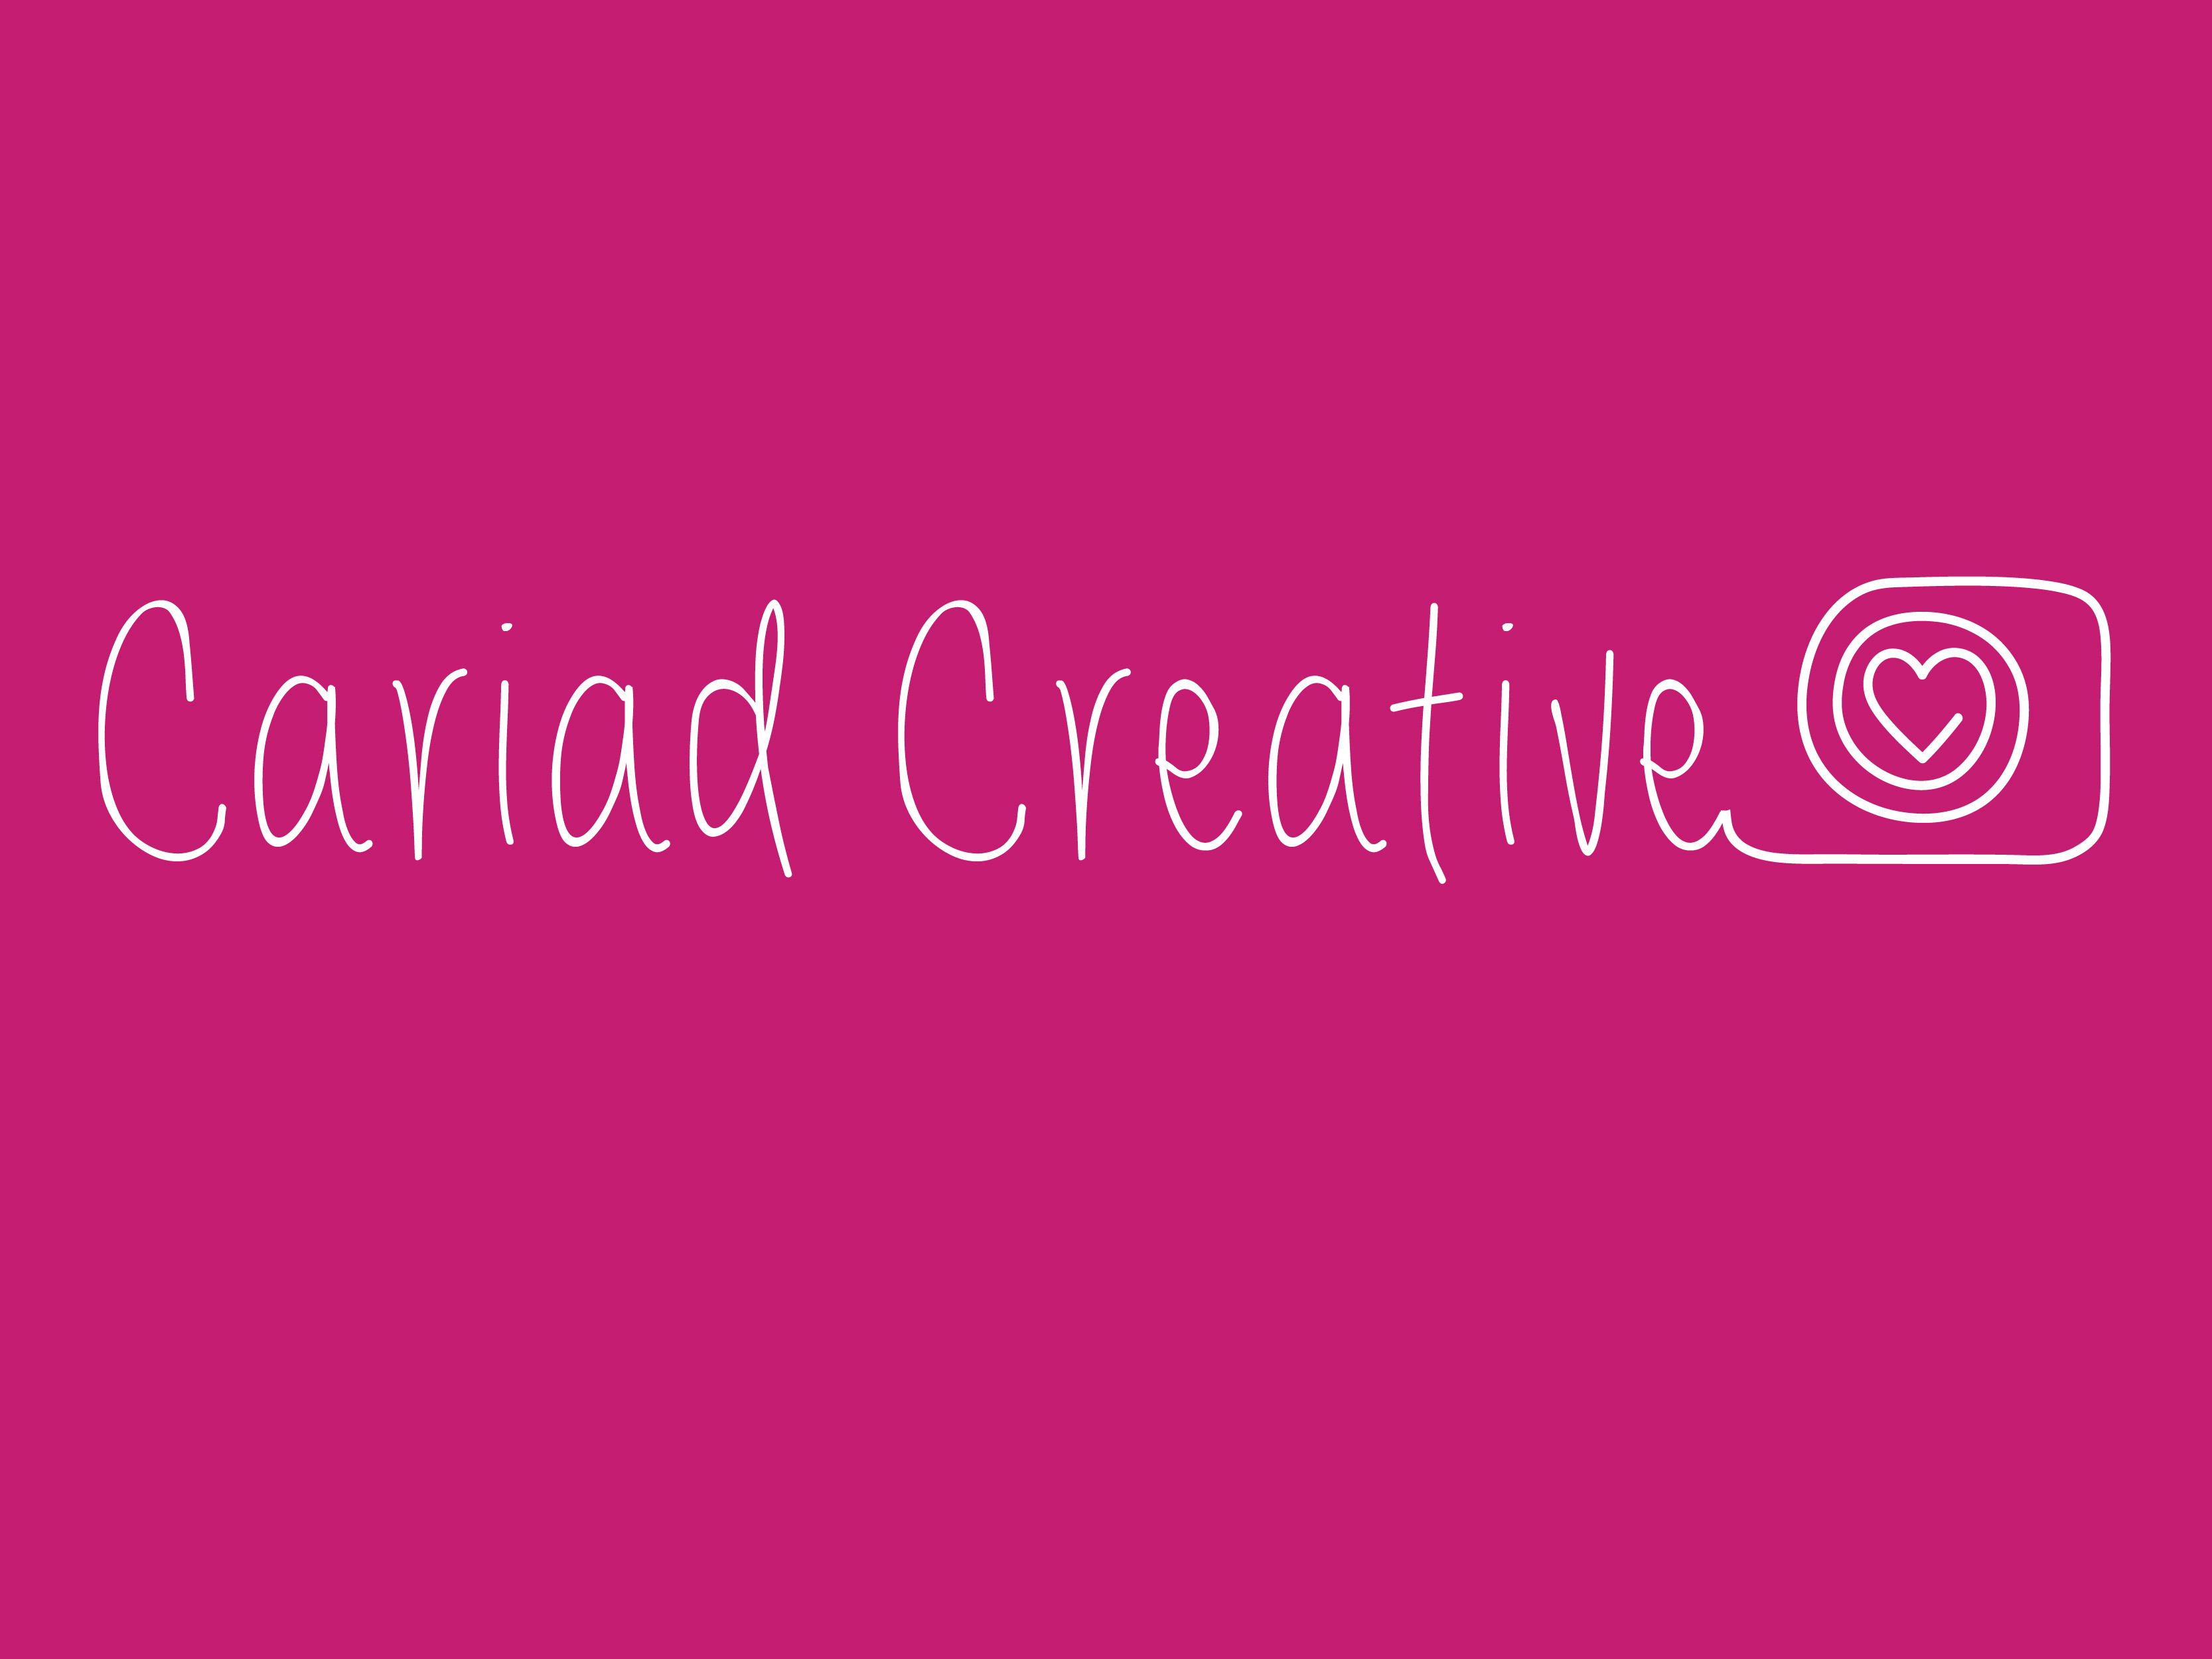 CARIAD CREATIVE logo